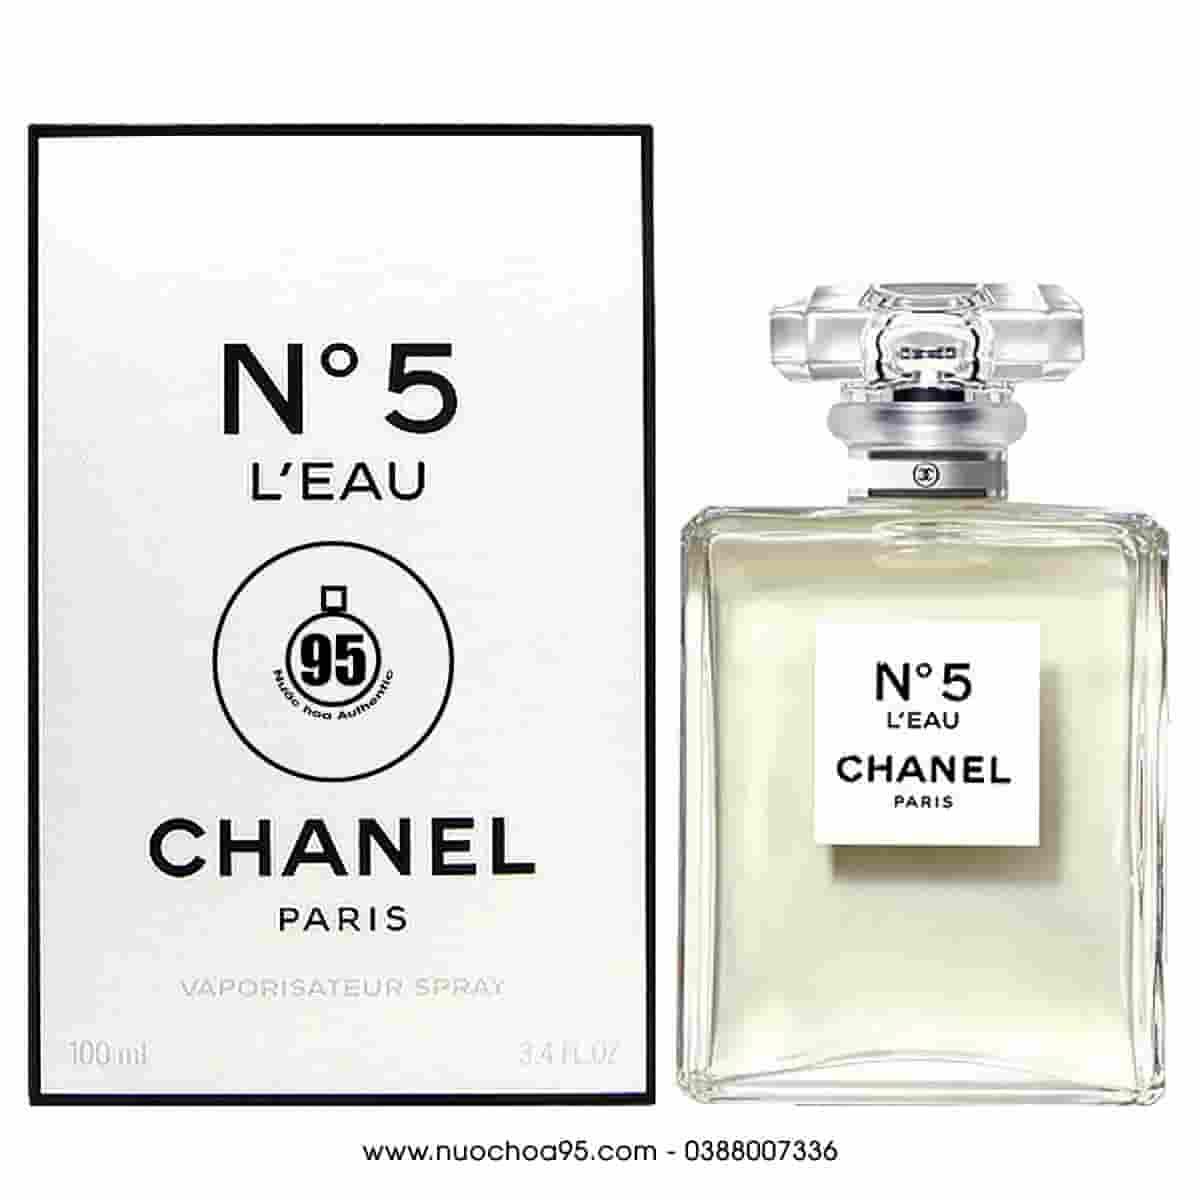 Nước hoa nữ Chanel No 5 L'Eau 100ml của hãng CHANEL